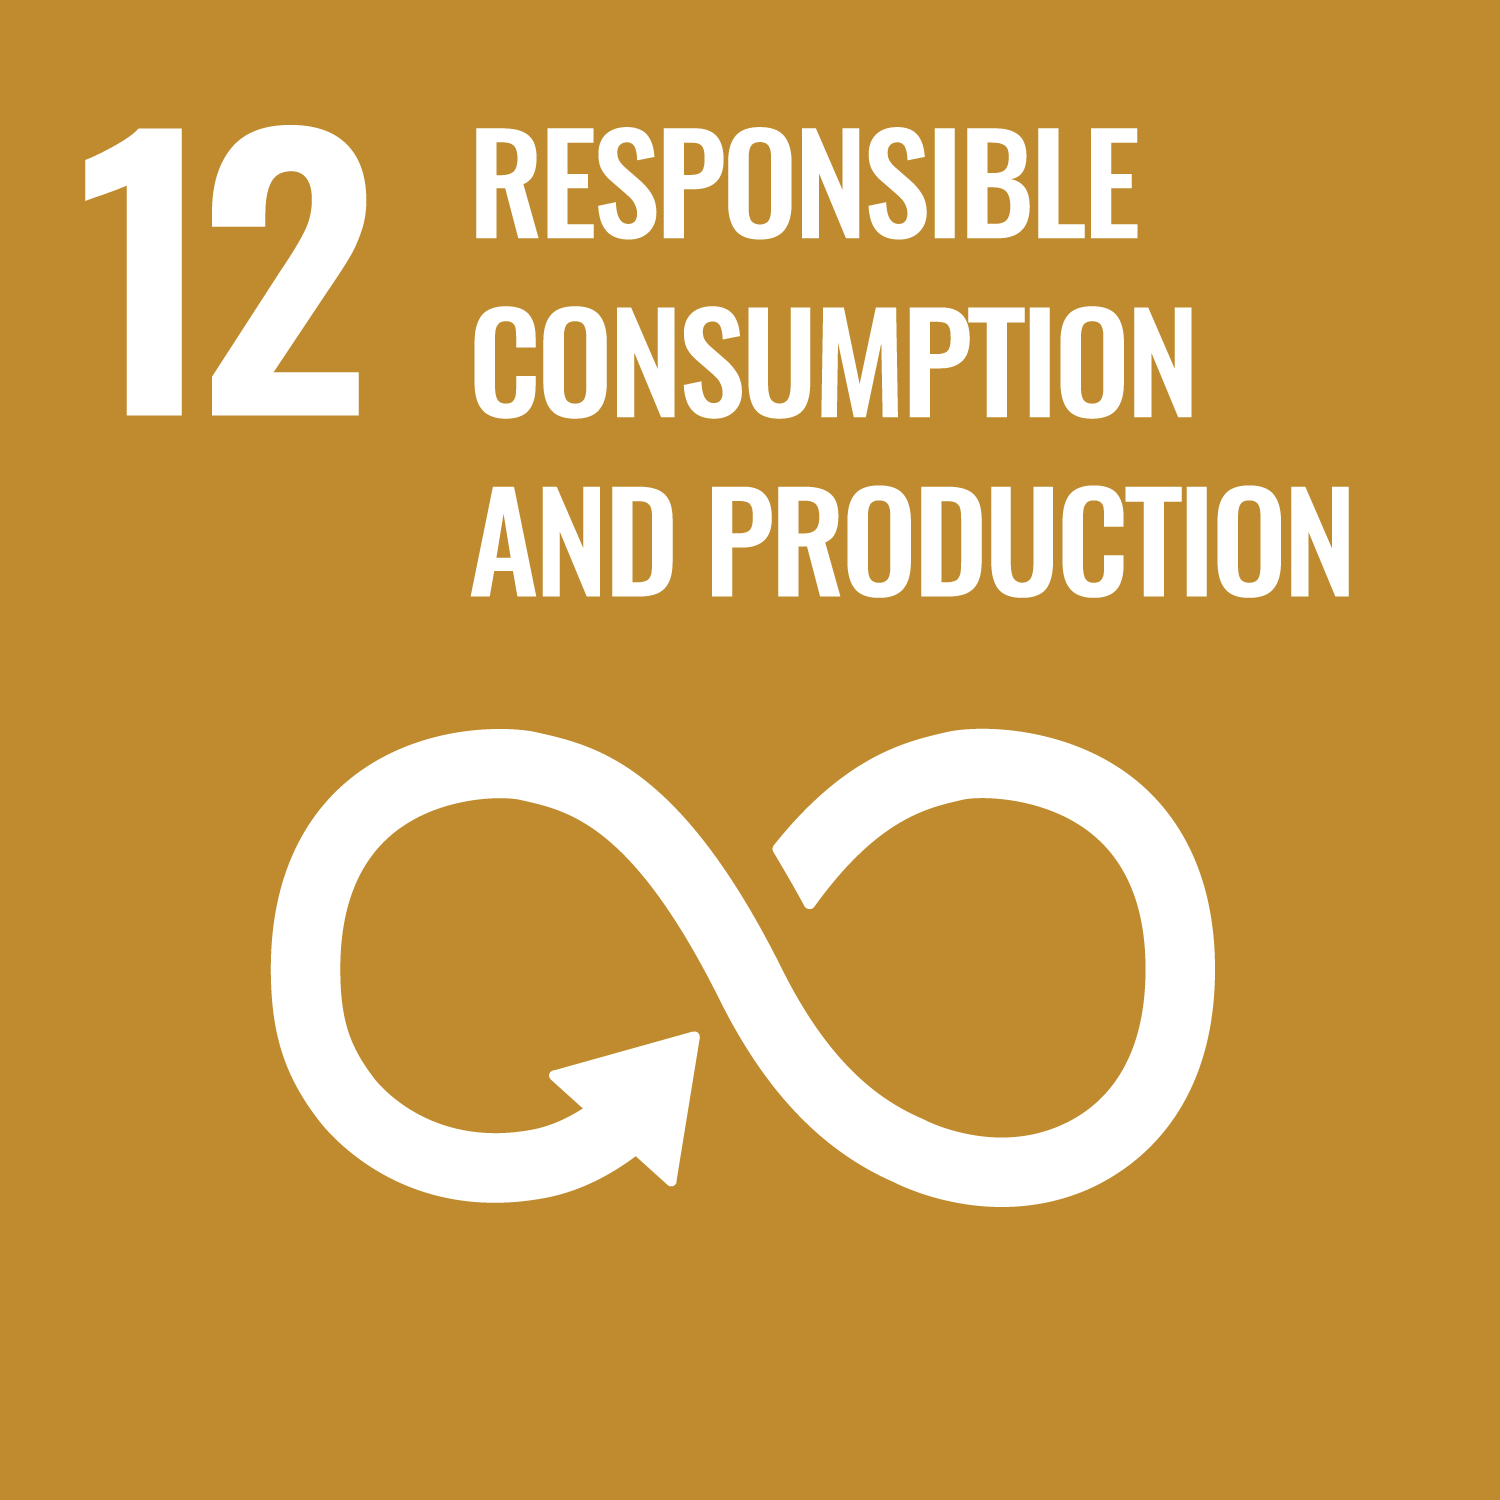 Nachhaltige Konsum- und Produktionsweisen – nachhaltige Konsum- und Produktionsmuster sicherstellen.